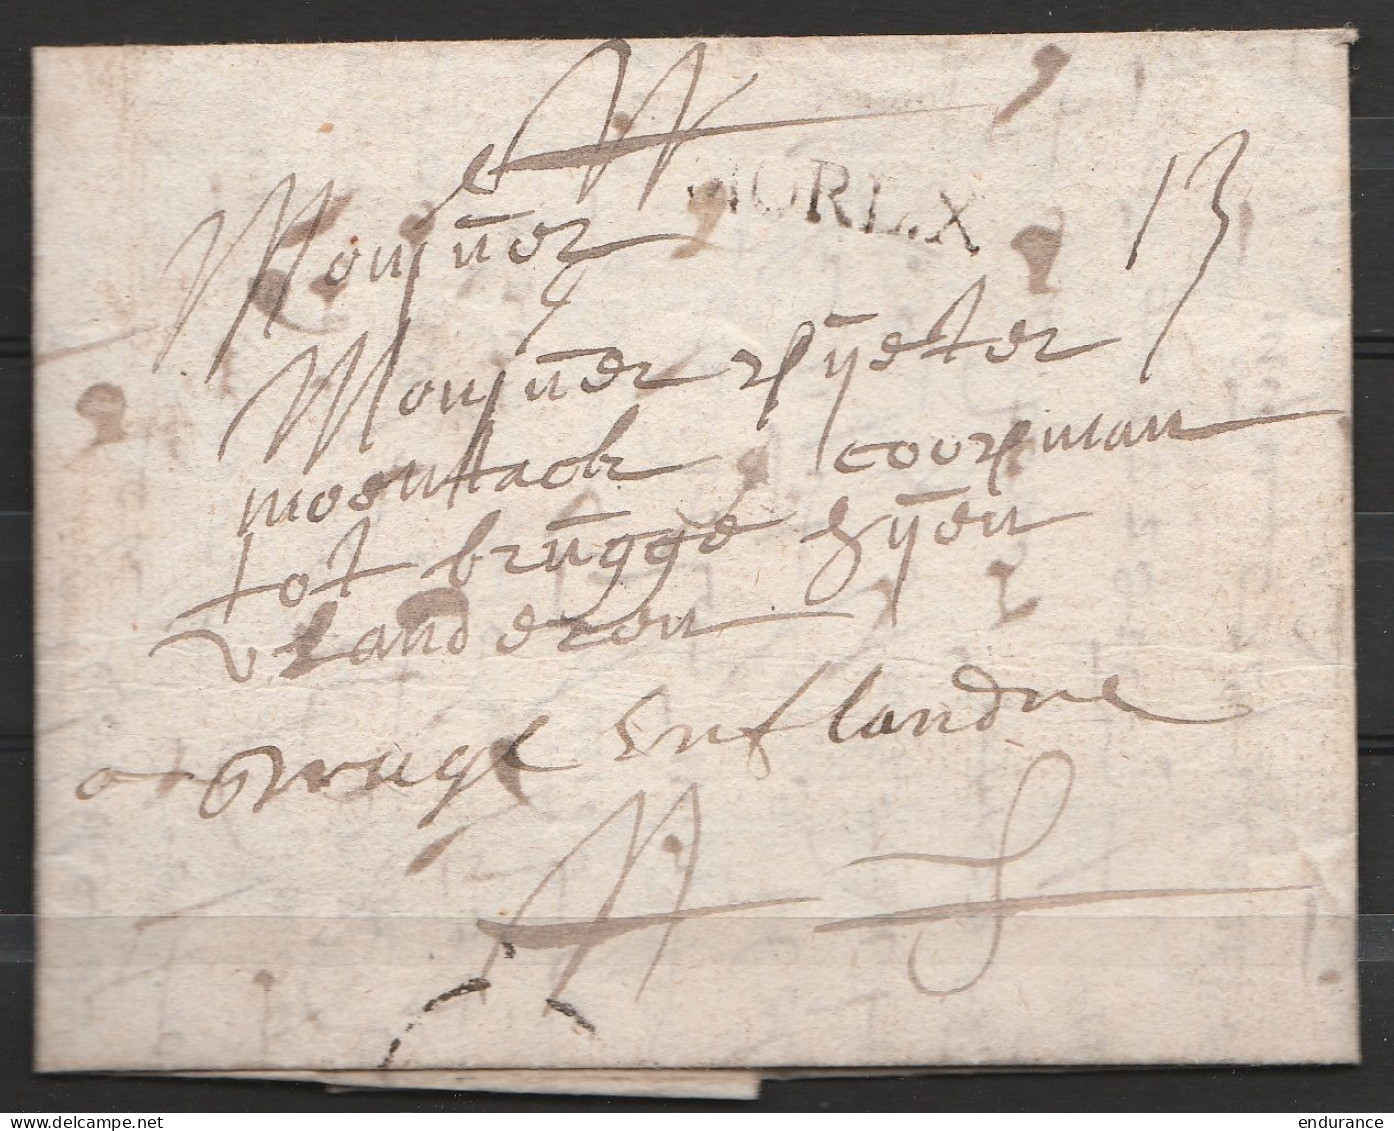 L. Datée 29 Septembre 1722 De MORLAIX Pour BRUGGE - Griffe "MOL.X" Port 13 - 1714-1794 (Oostenrijkse Nederlanden)